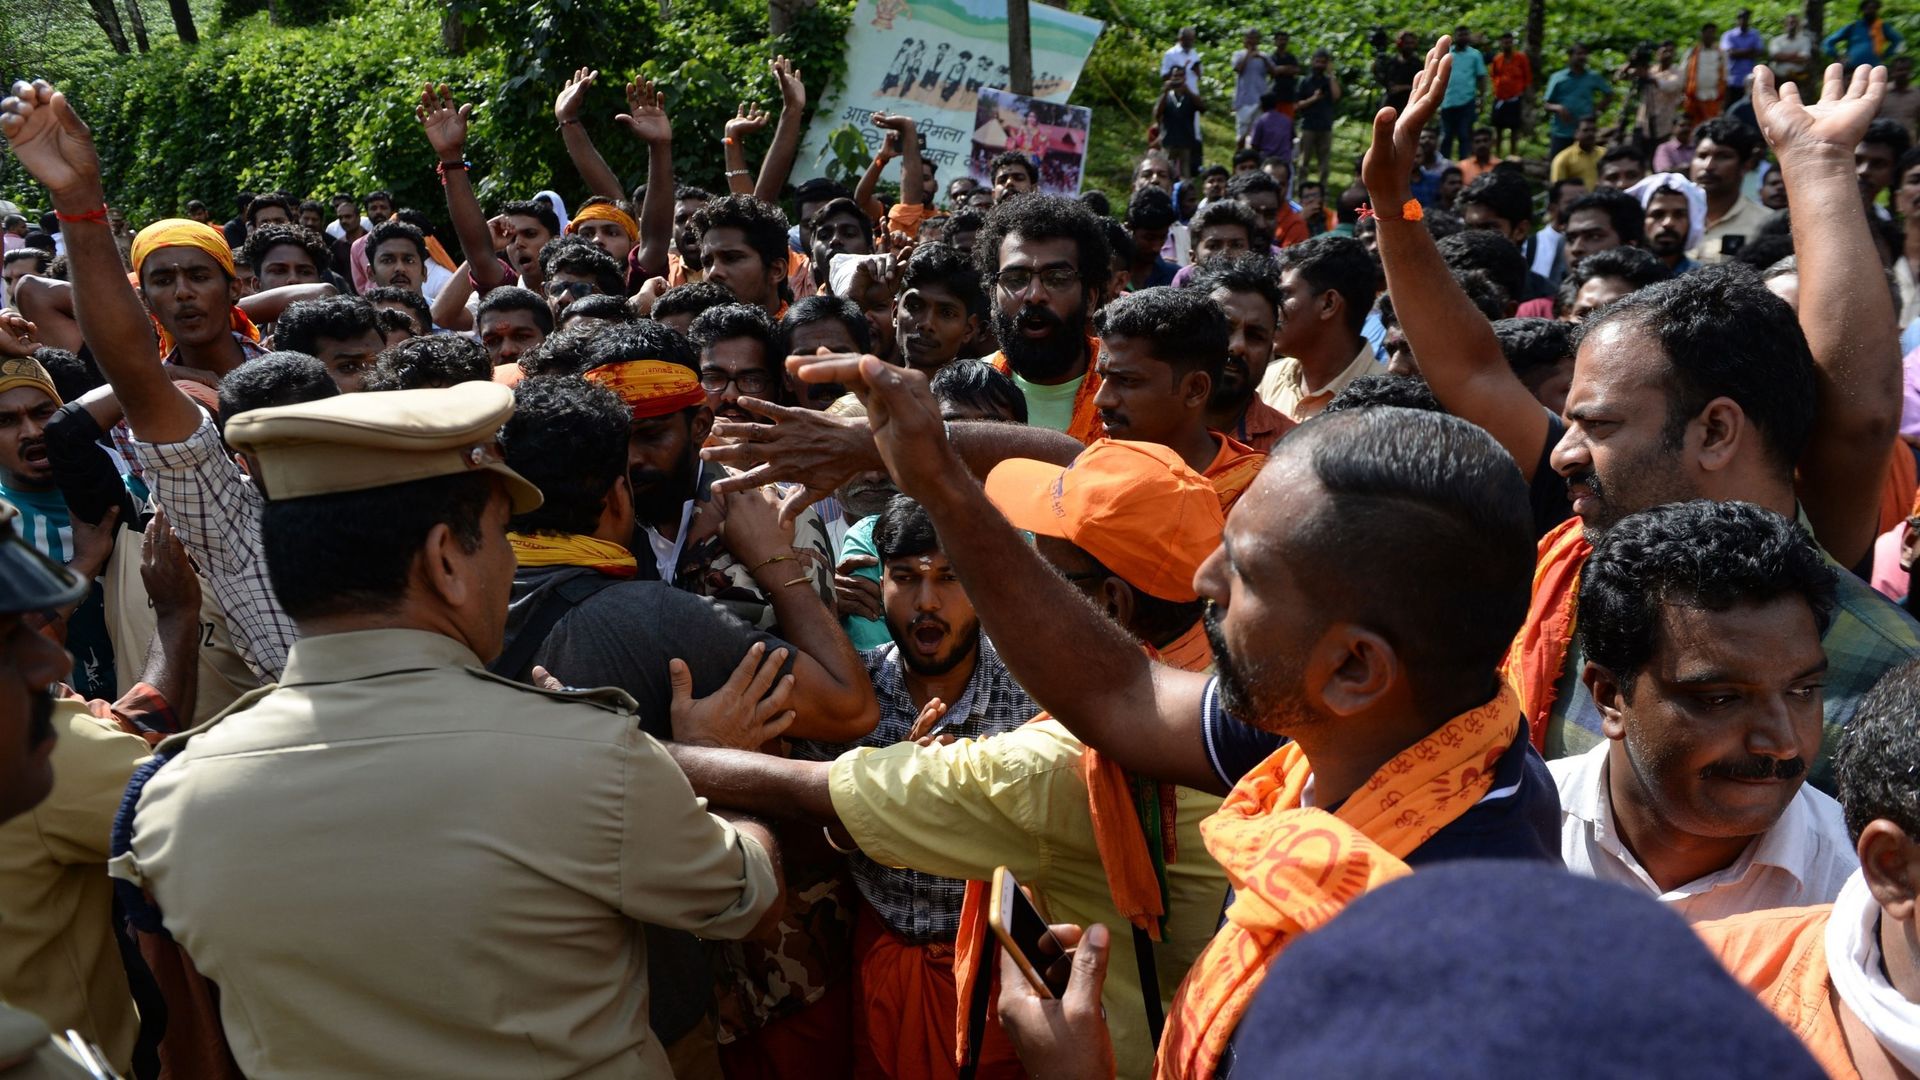 La police indienne arrête ceux qui empêchent les femmes d'accéder au temple hindou d'Ayyappa